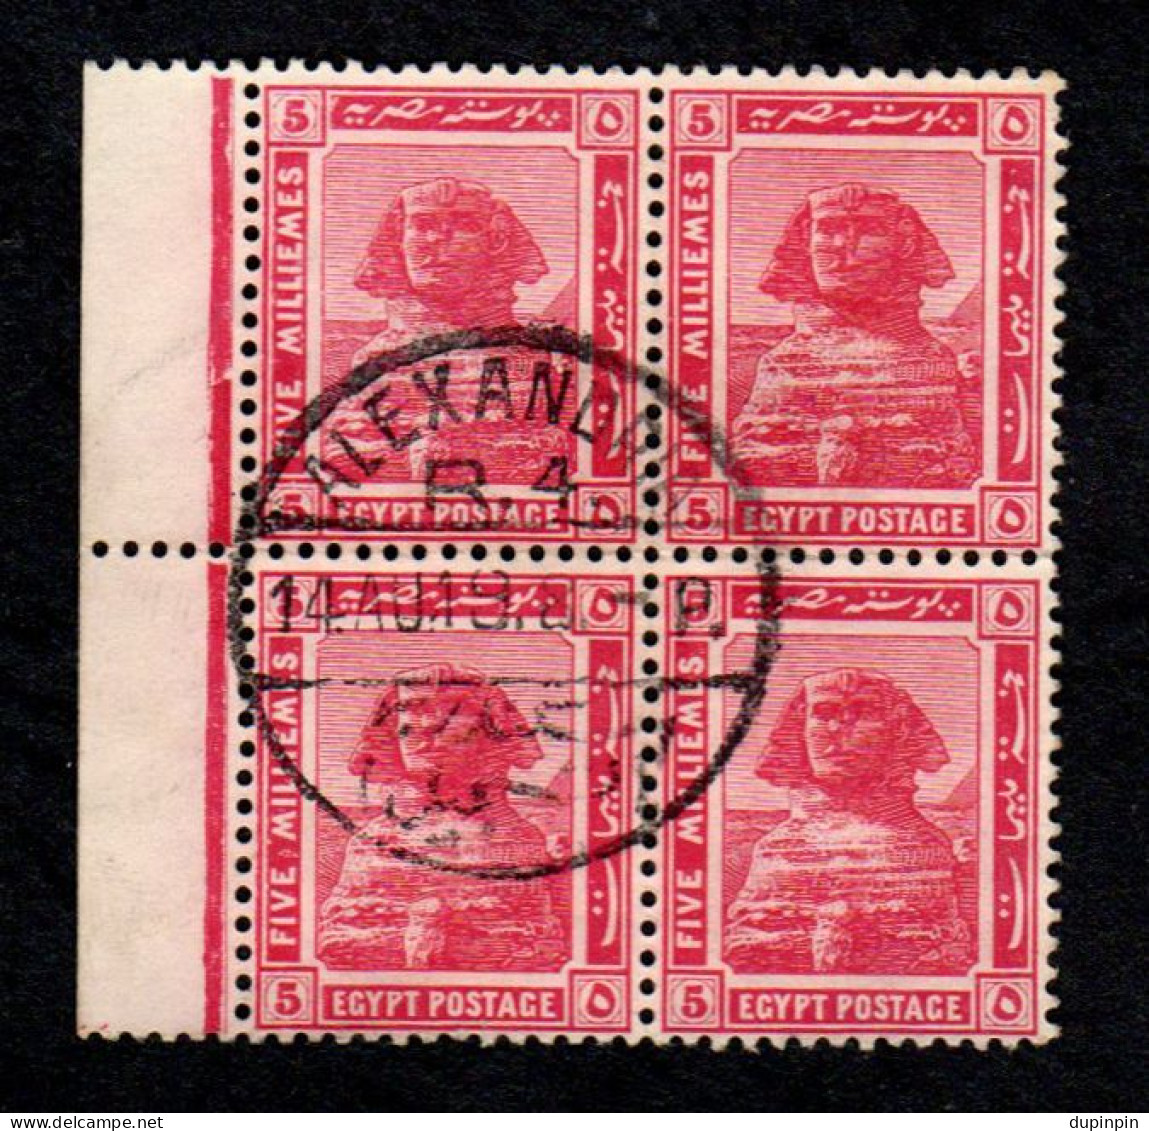 Bloc De 4 Valeurs - 5 FIVE MILLIEMES 1914 EGYPTE - 1915-1921 Protectorat Britannique